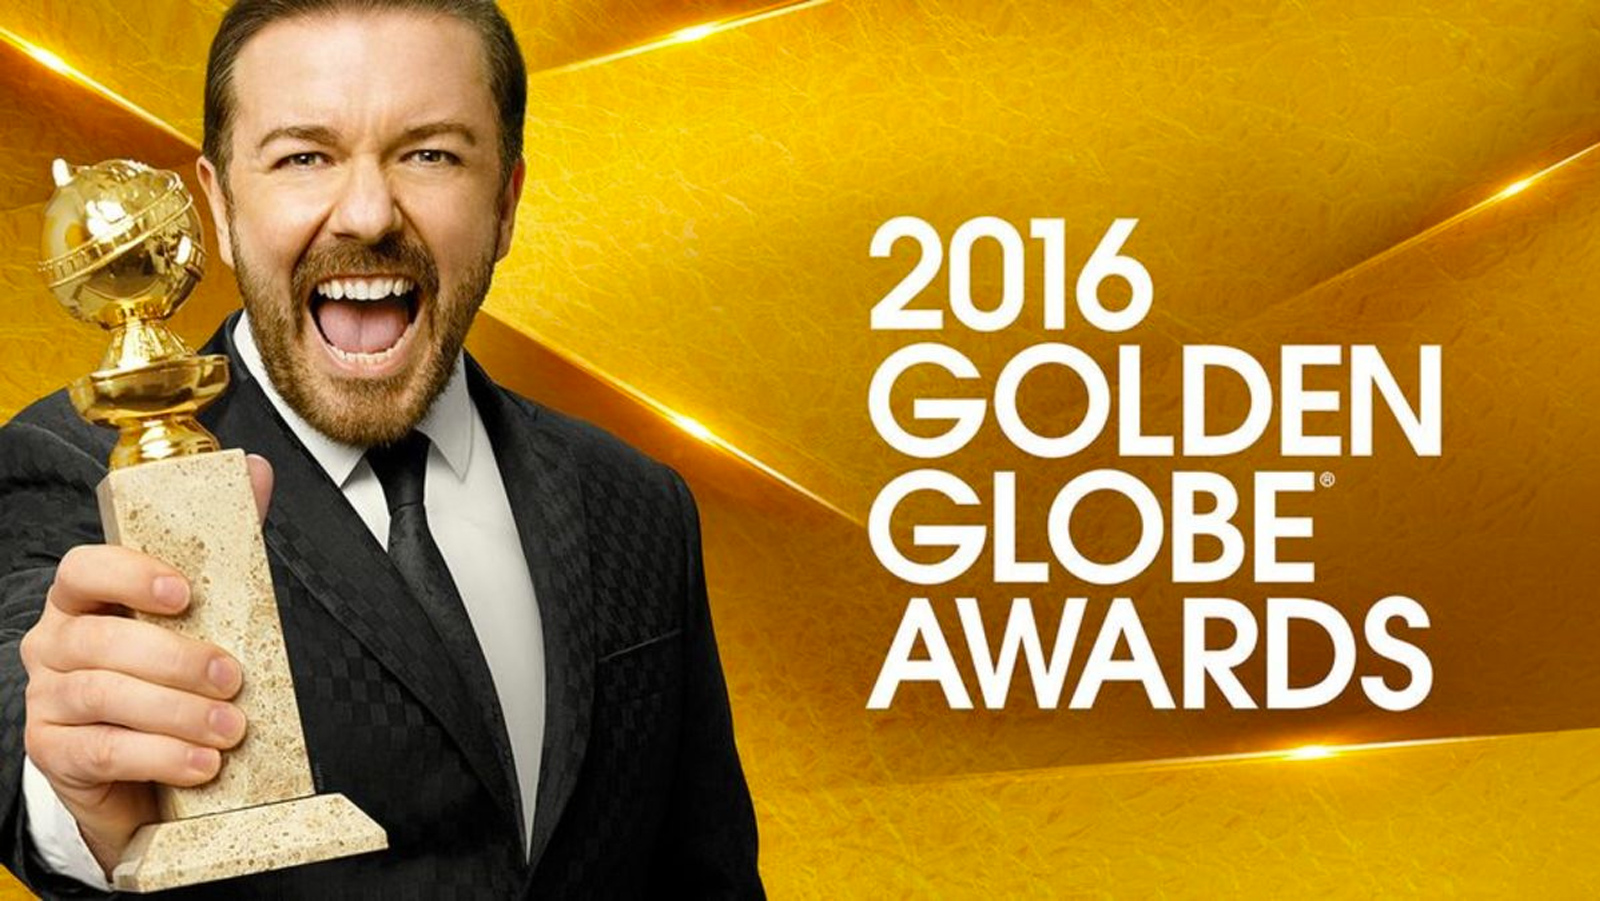 golden globe awards bg image